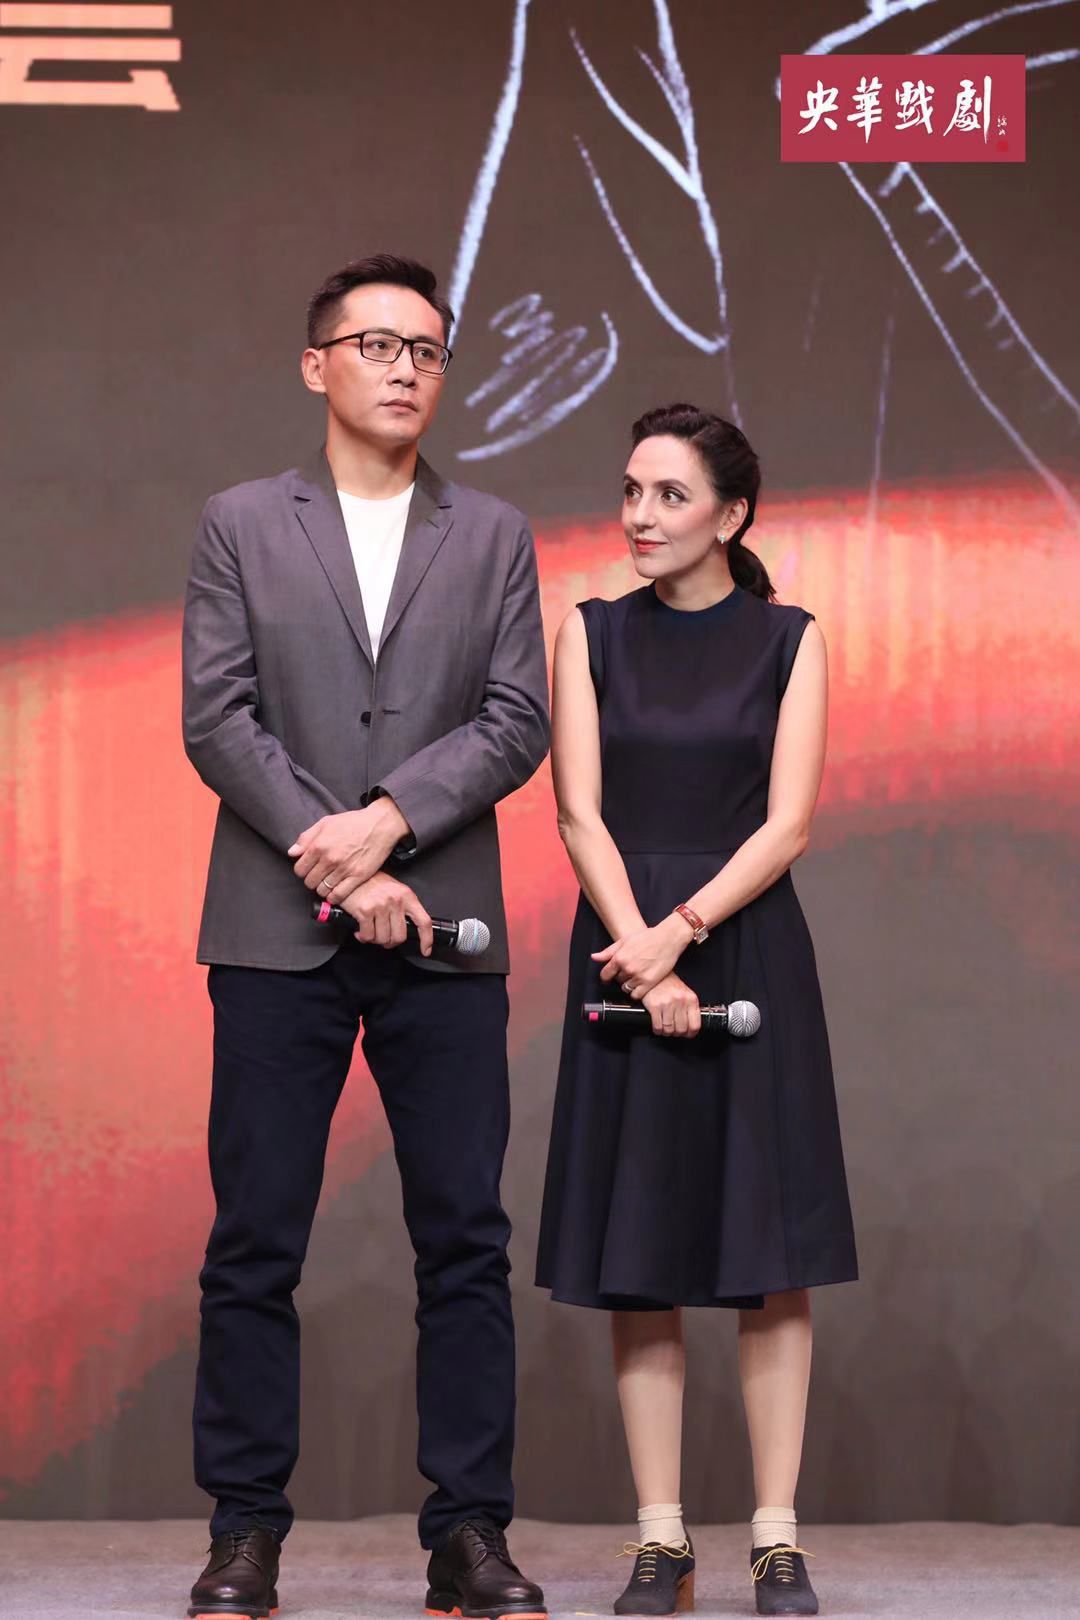 女主角,法国艺术家安娜伊思61马田的丈夫,中国著名演员刘烨为其主题